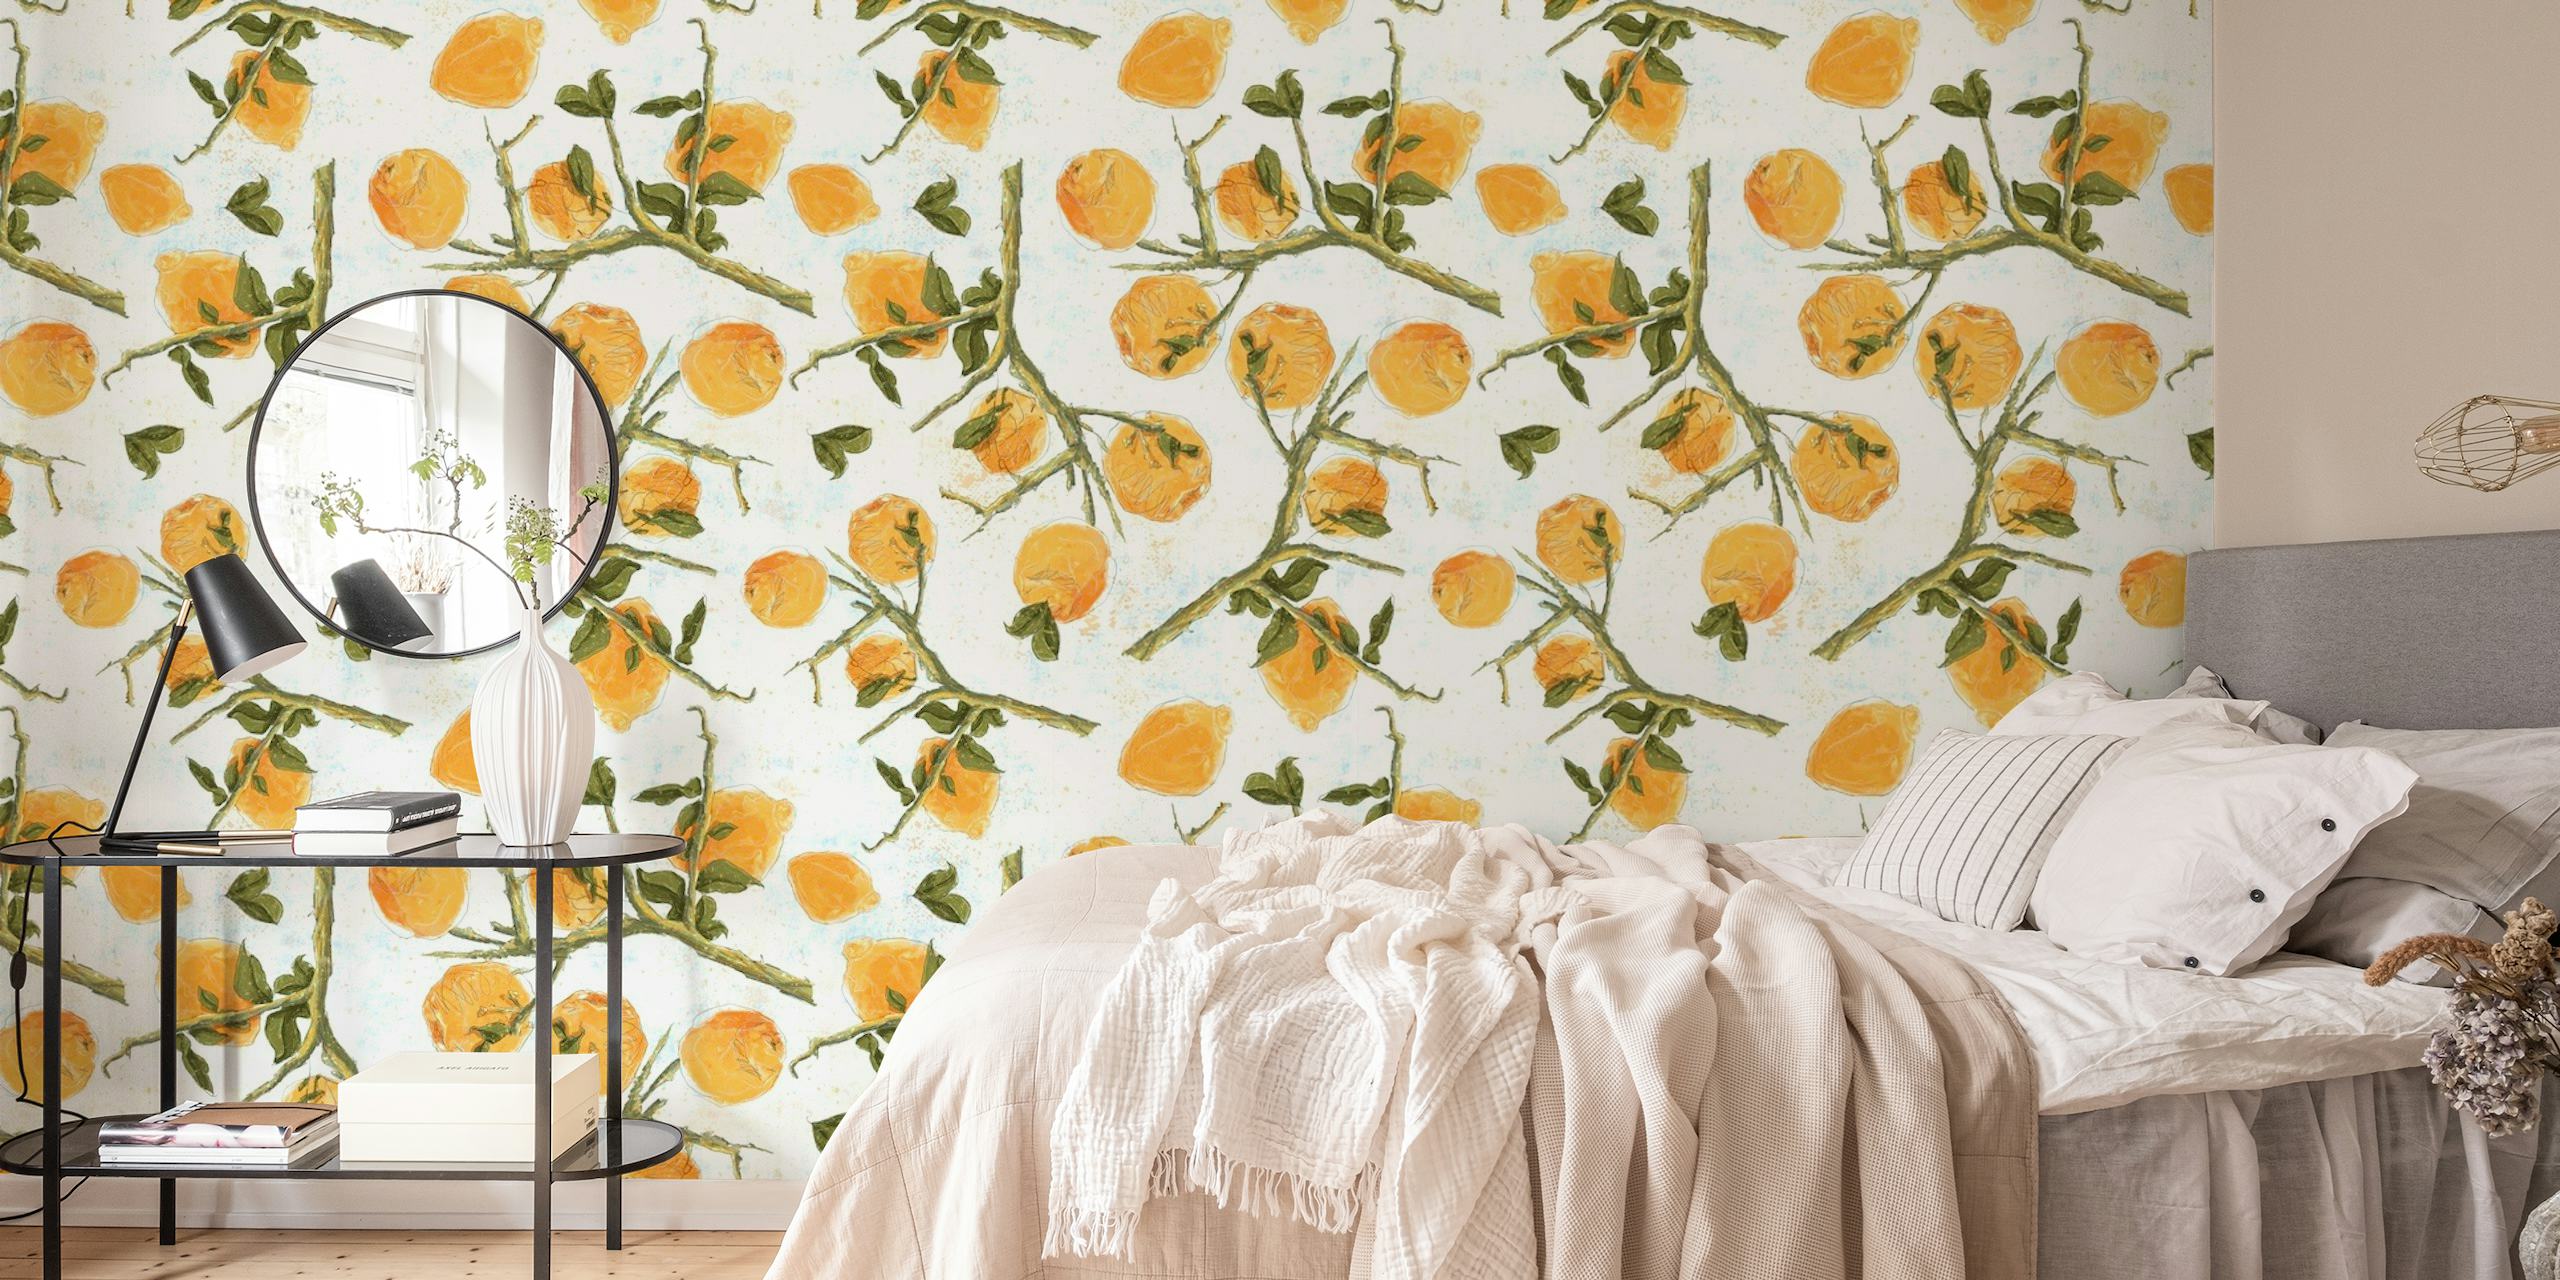 Citroenen op wit fotobehang met geïllustreerde citrusvruchten en groene bladeren